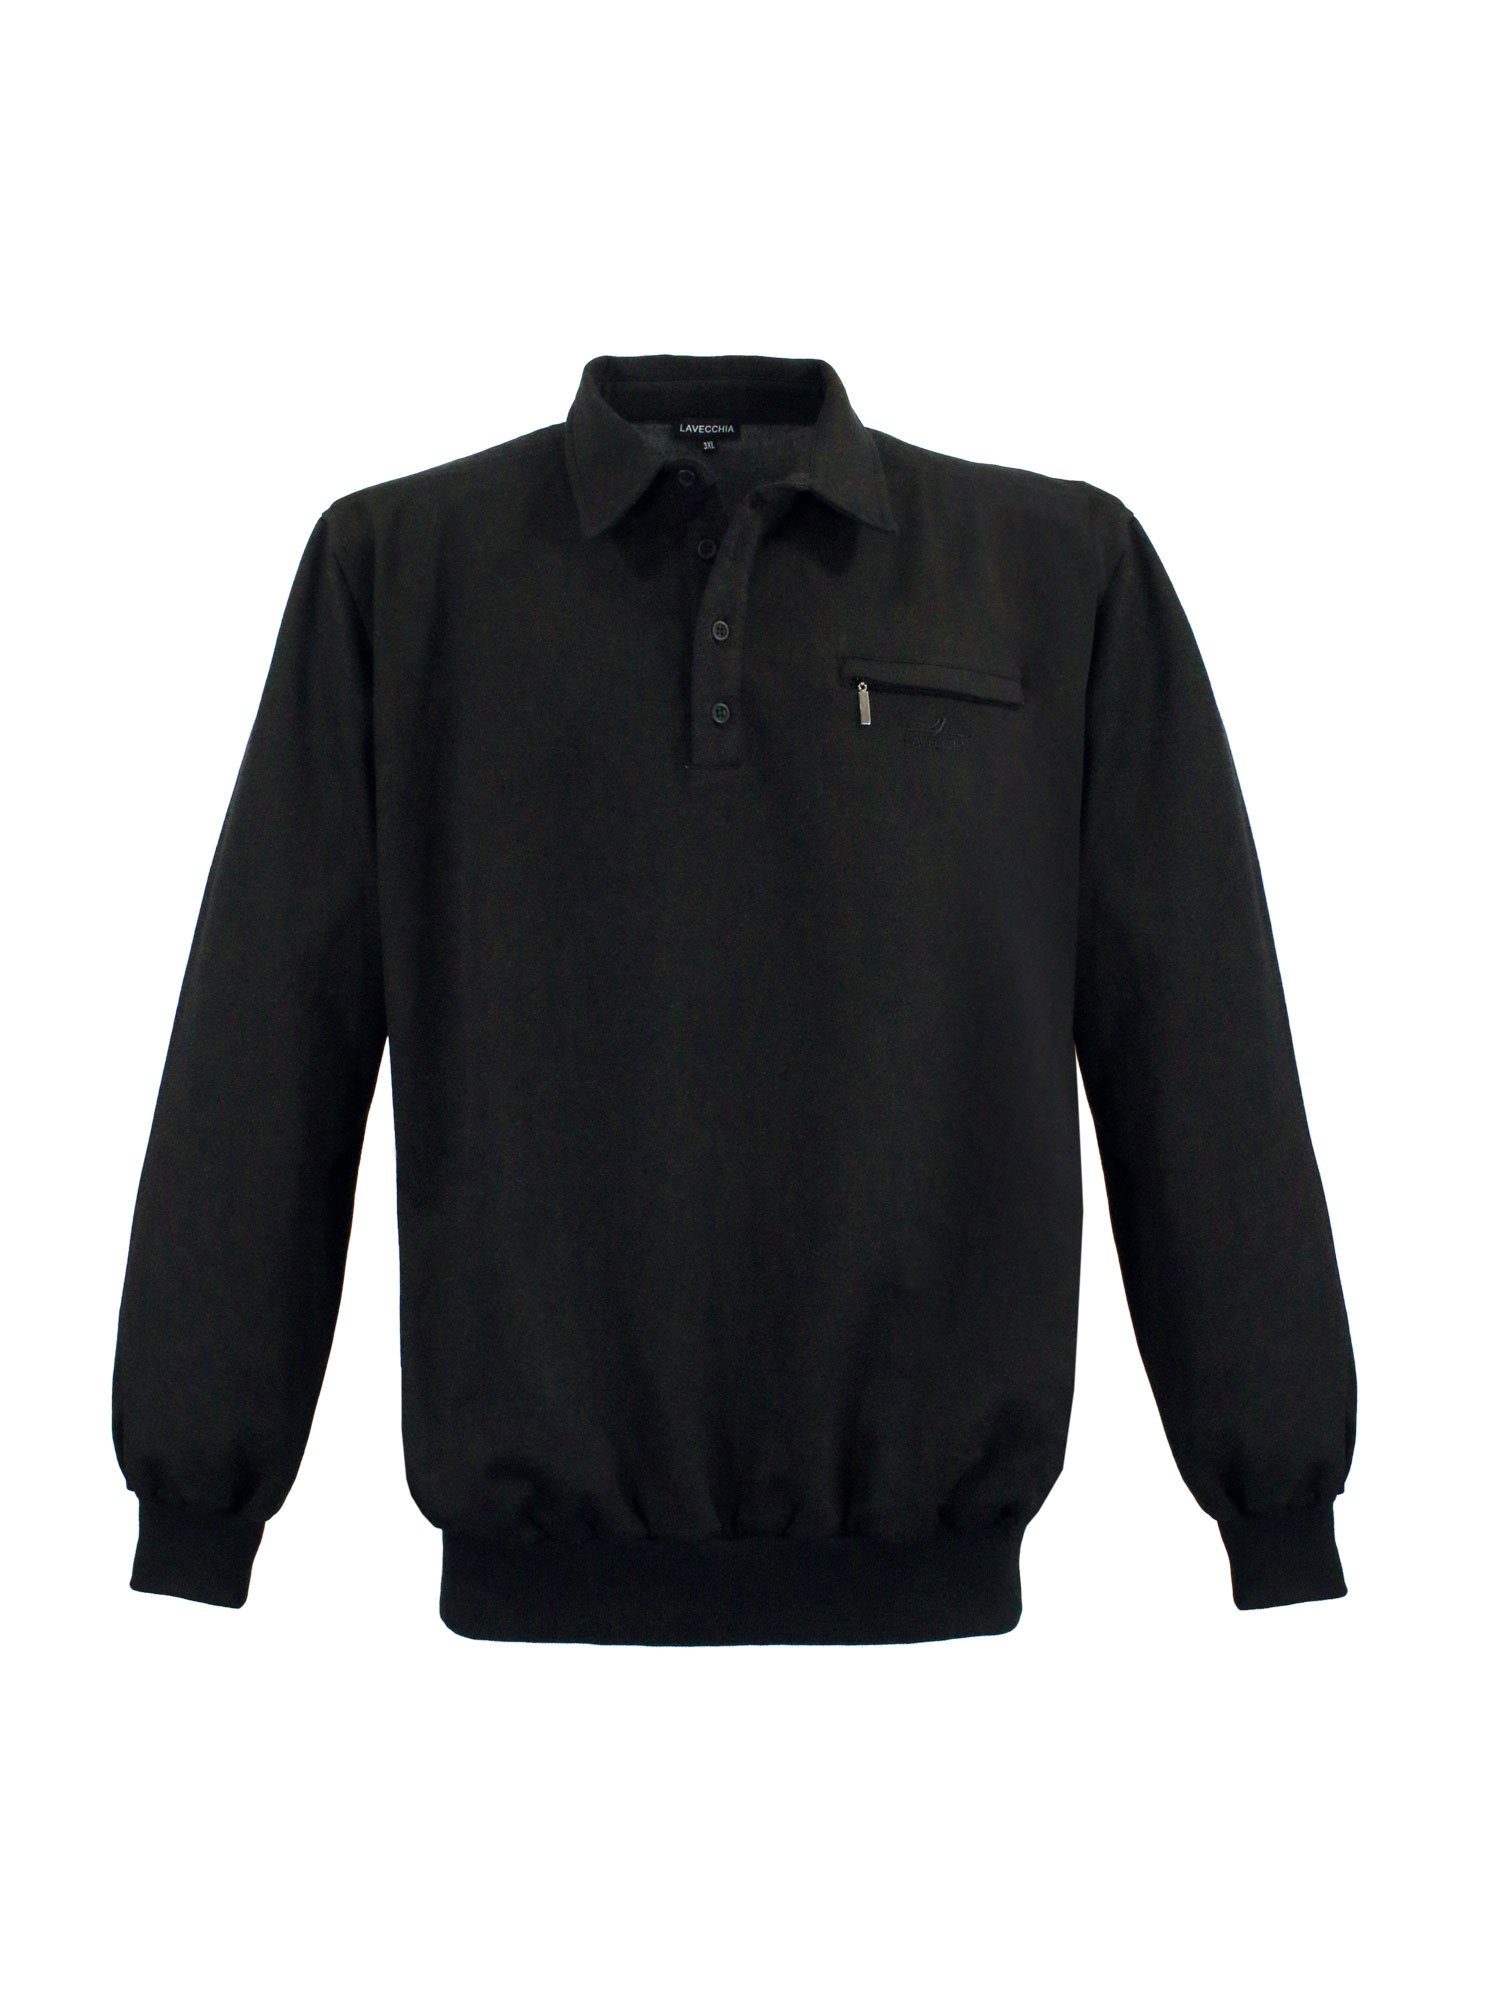 Lavecchia Sweatshirt Übergrößen Sweater LV-705S Pullover Pulli Sweat schwarz